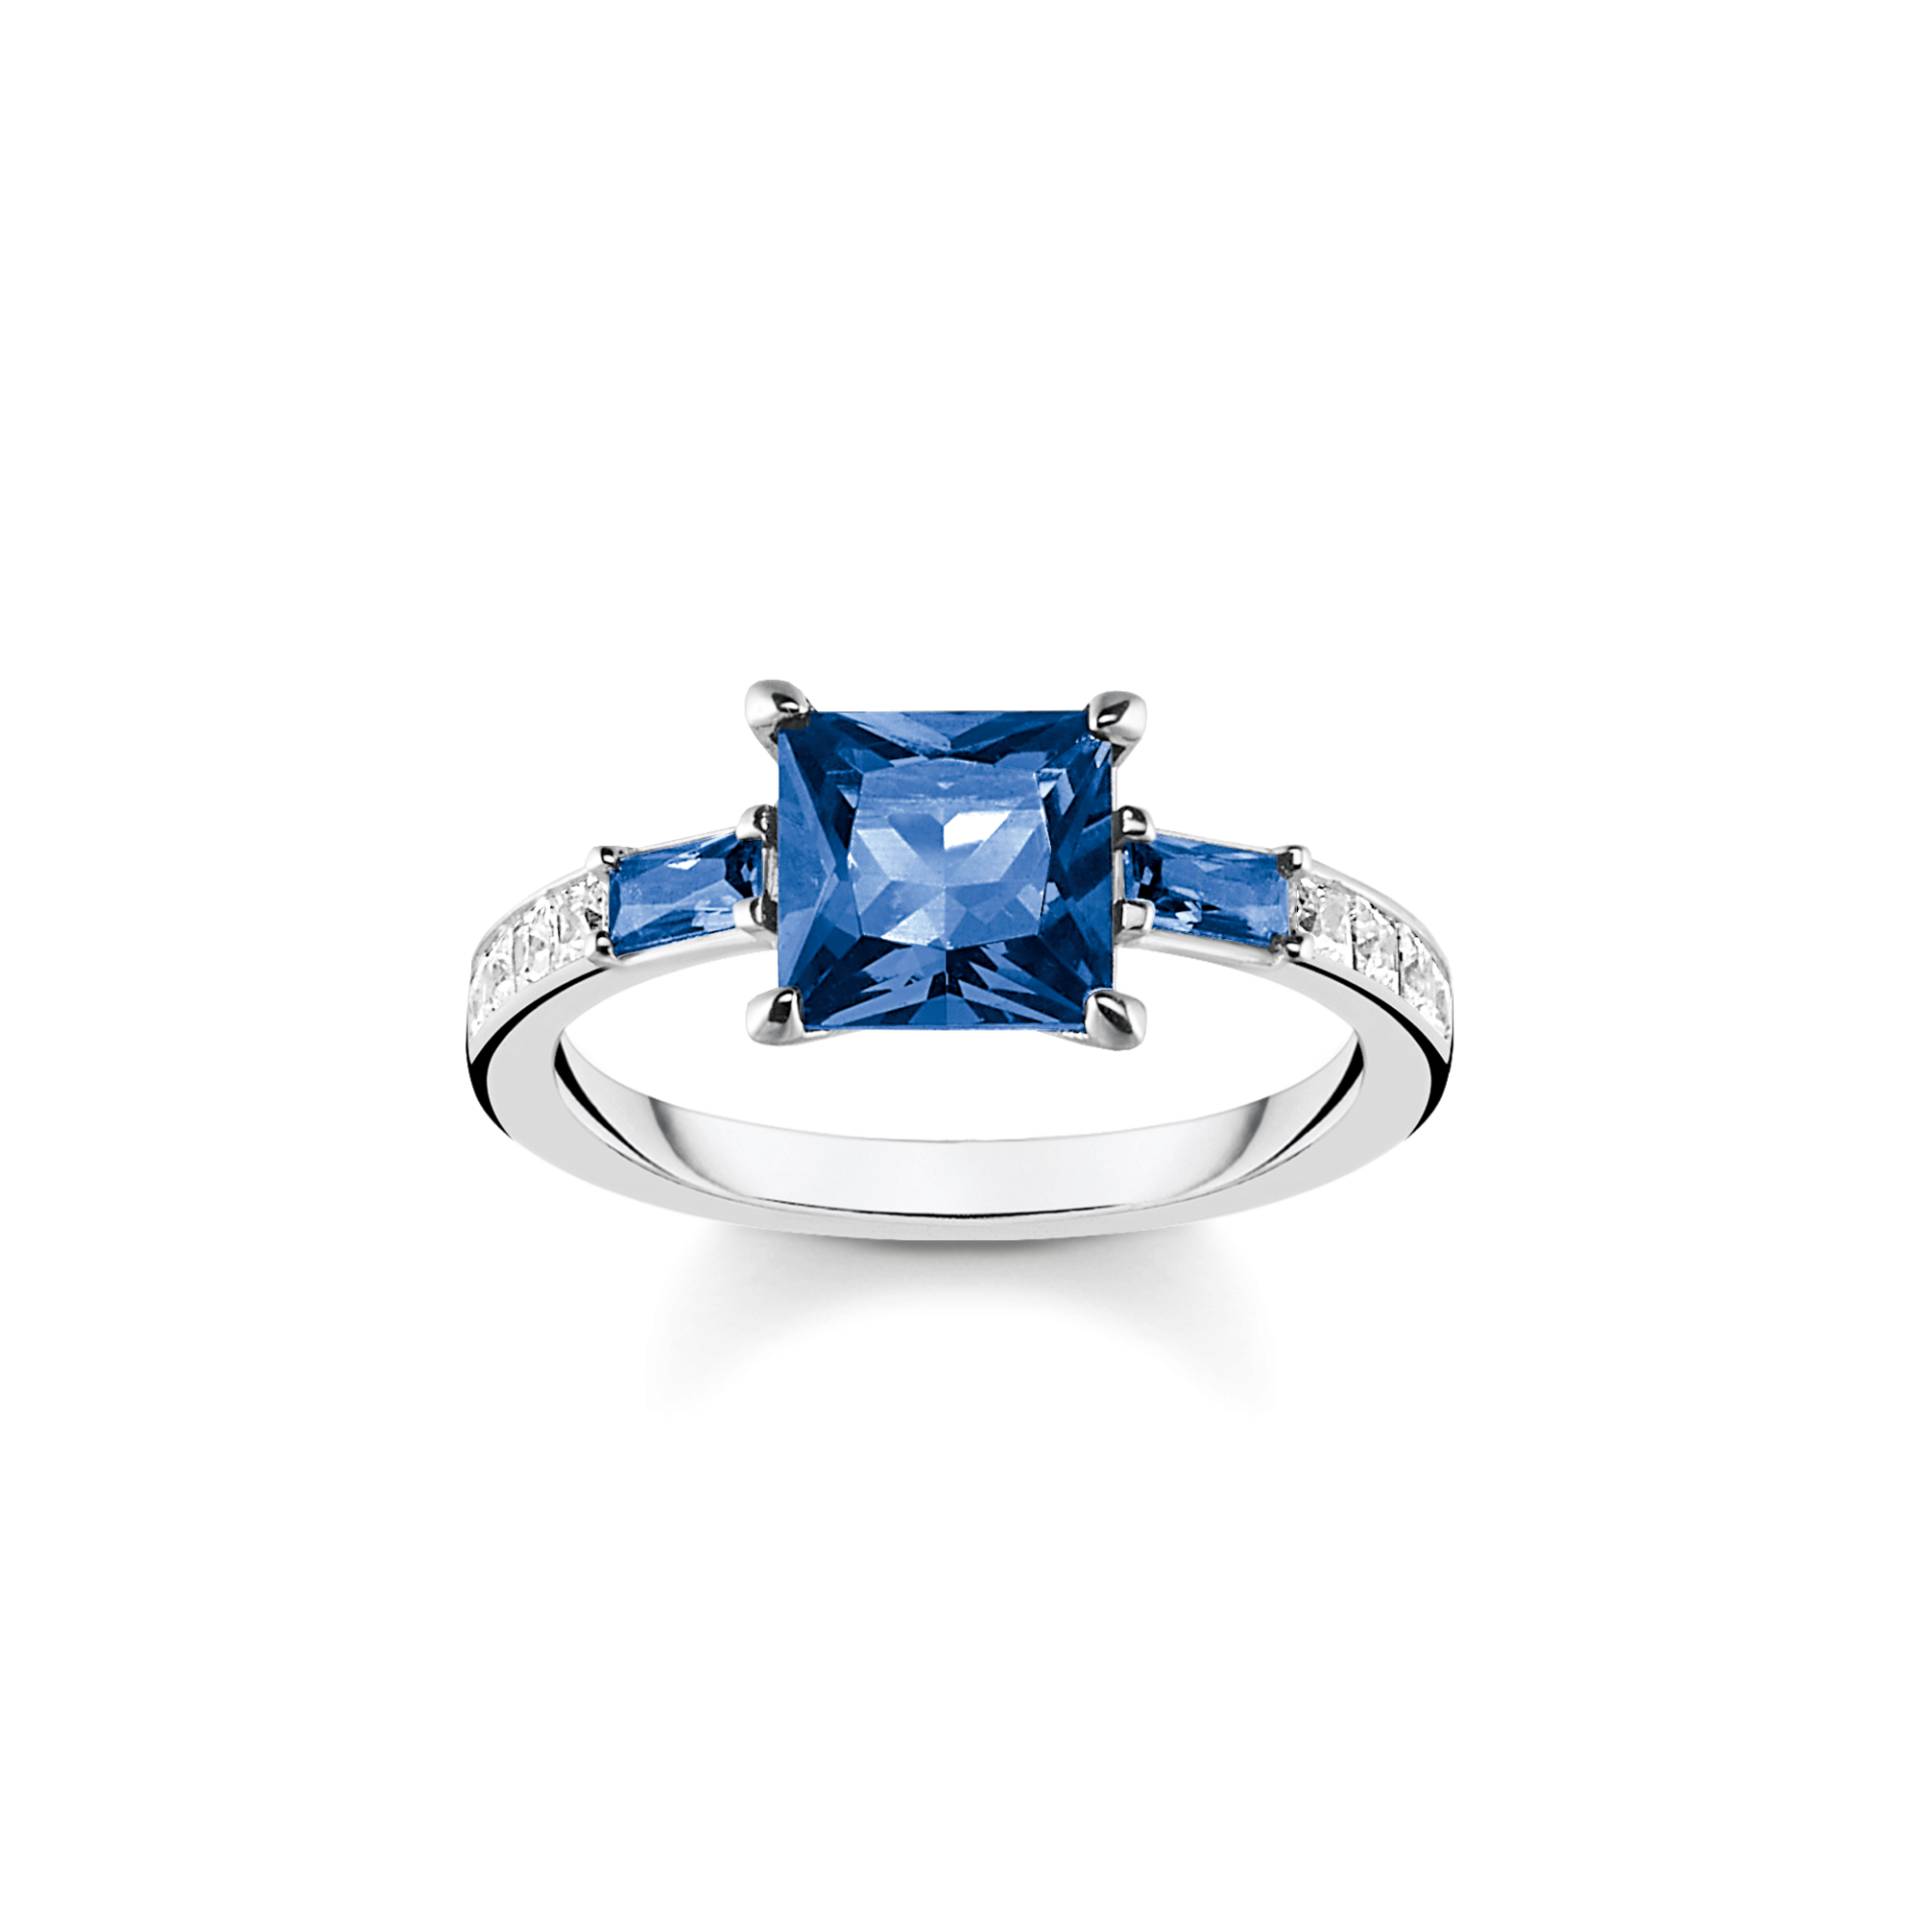 Thomas Sabo Ring mit blauen und weissen Steinen silber blau TR2380-166-1-54 von Thomas Sabo